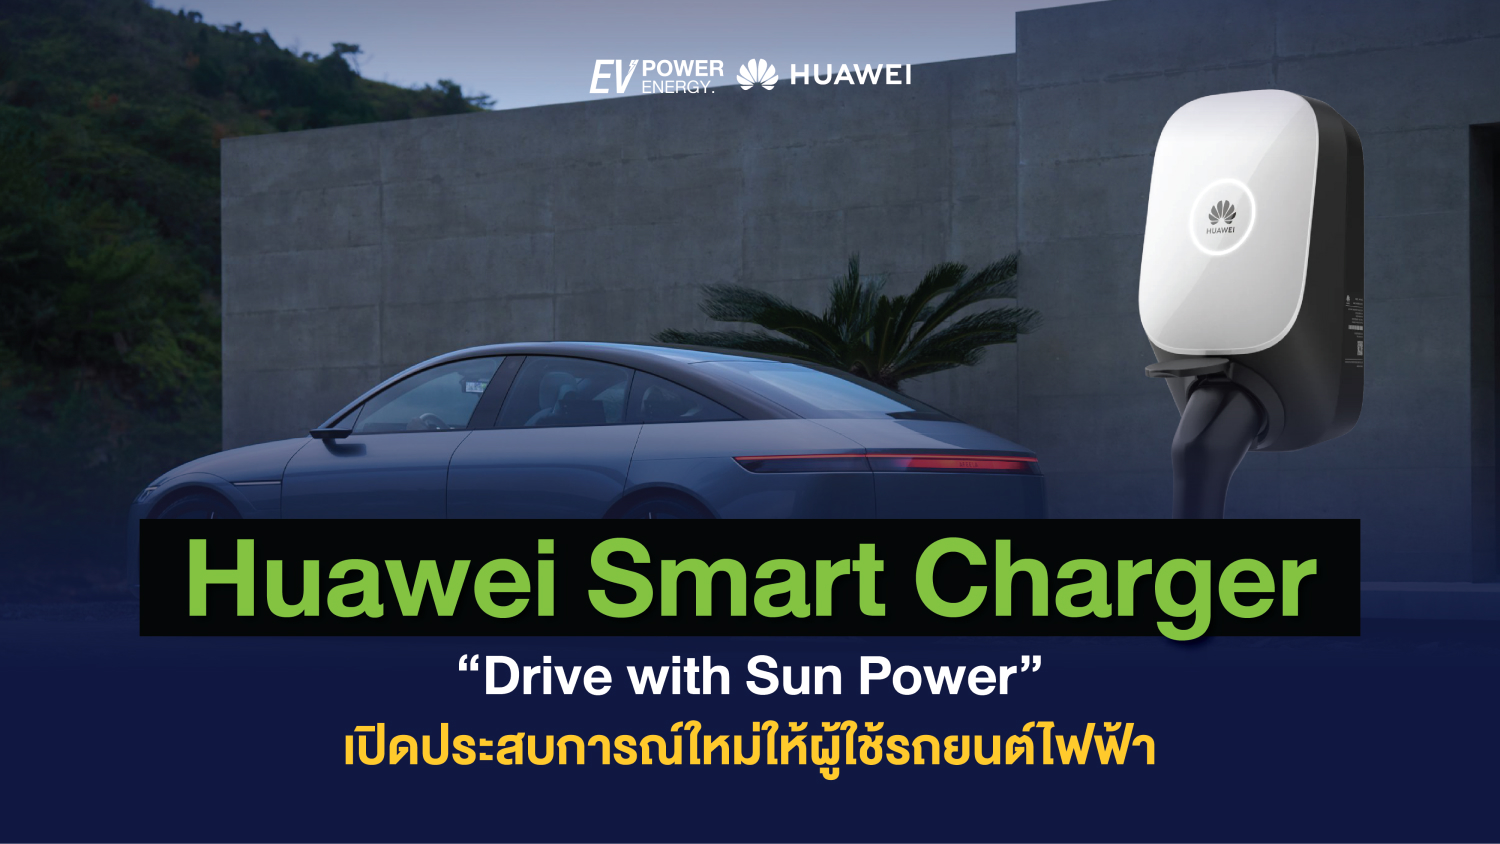 Huawei Smart Charger Drive with Sun Power เปิดประสบการณ์ใหม่ให้ผู้ใช้รถยนต์ไฟฟ้า 1